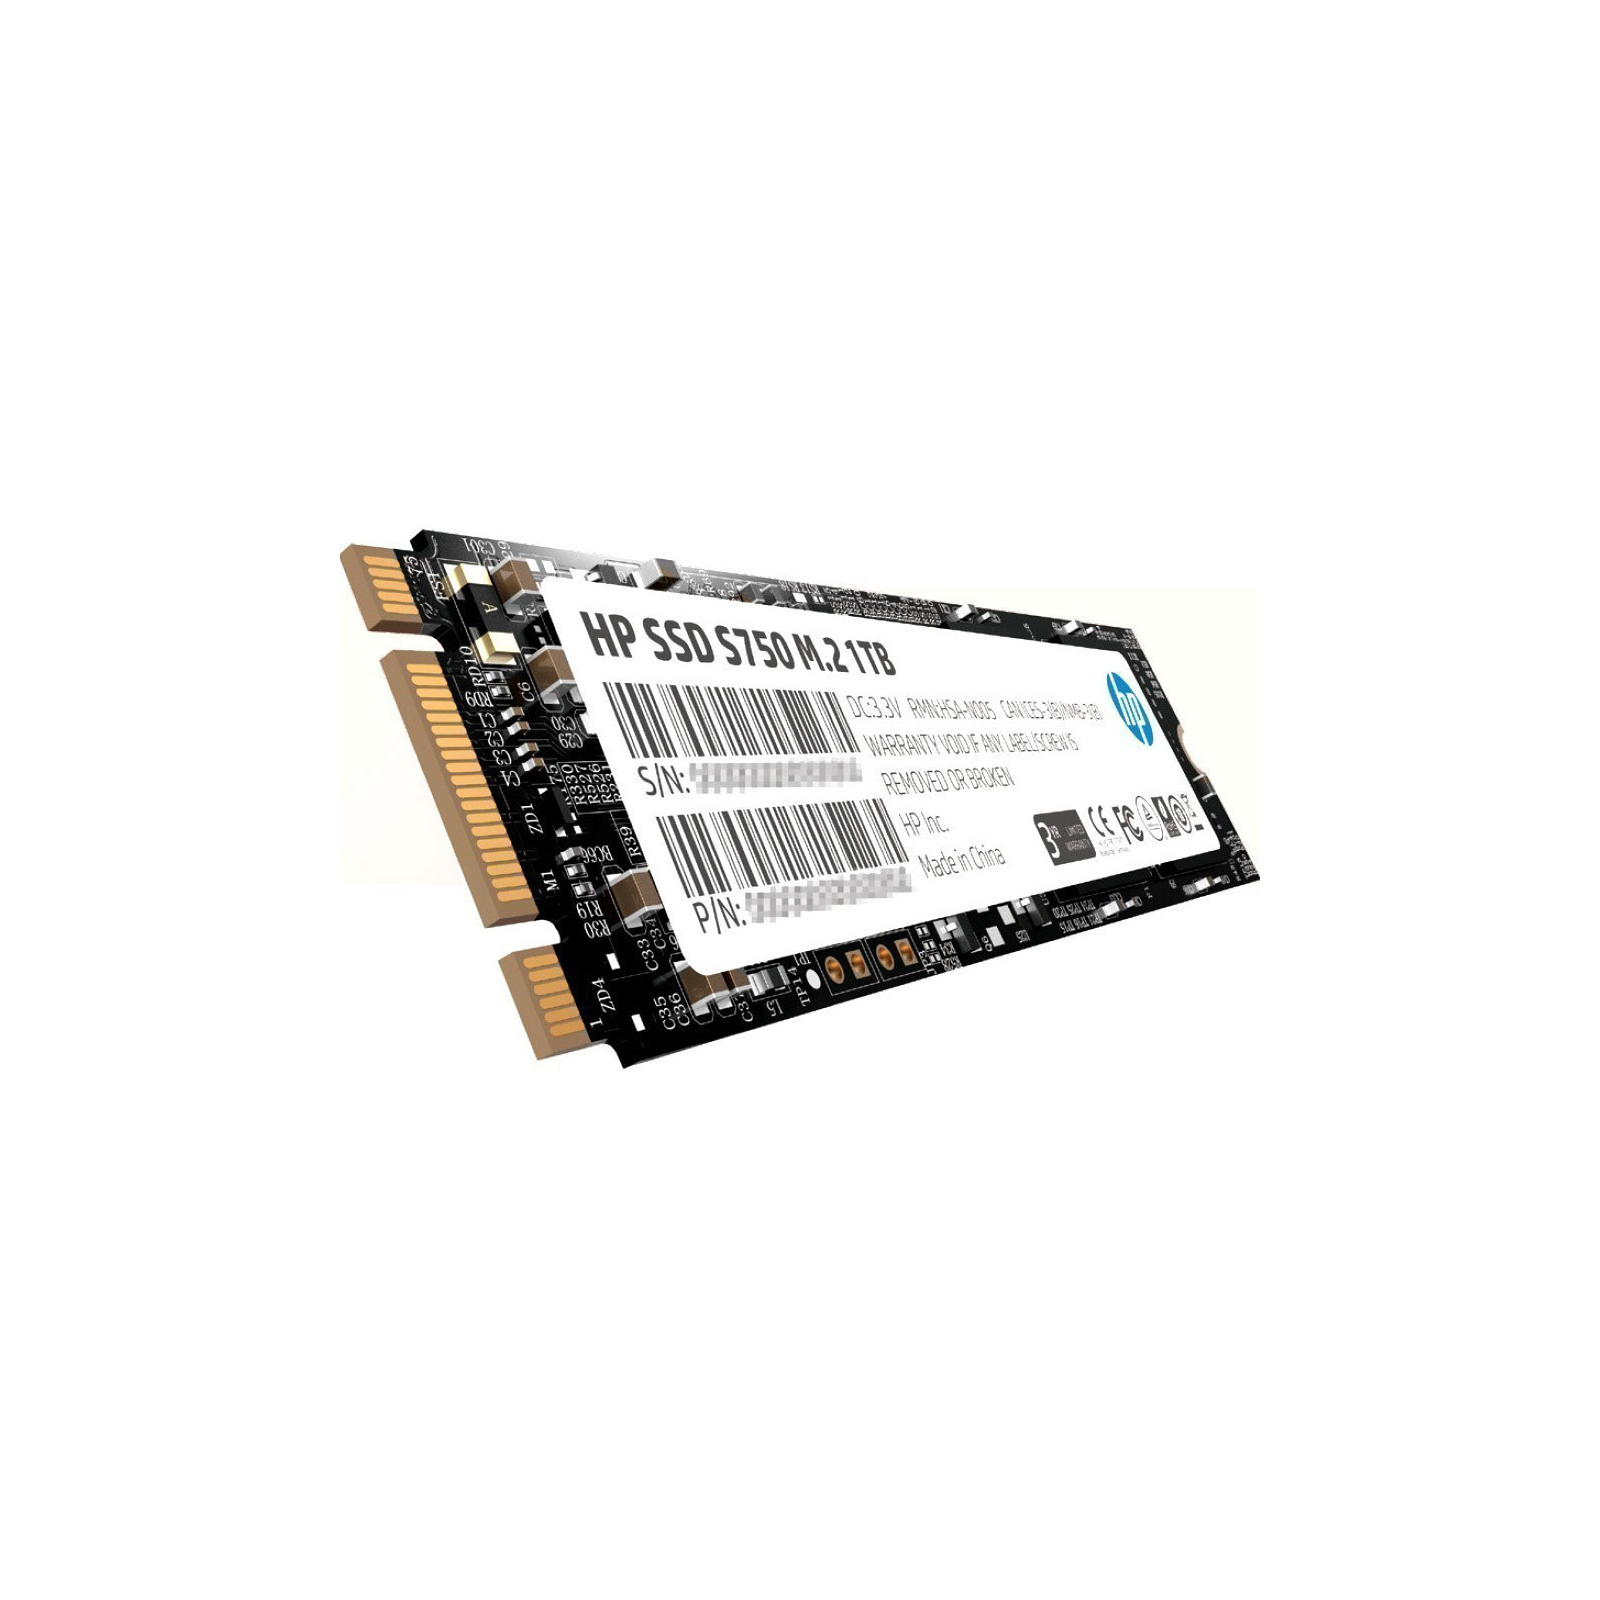 Накопитель SSD M.2 2280 256GB S750 HP (16L55AA) изображение 2